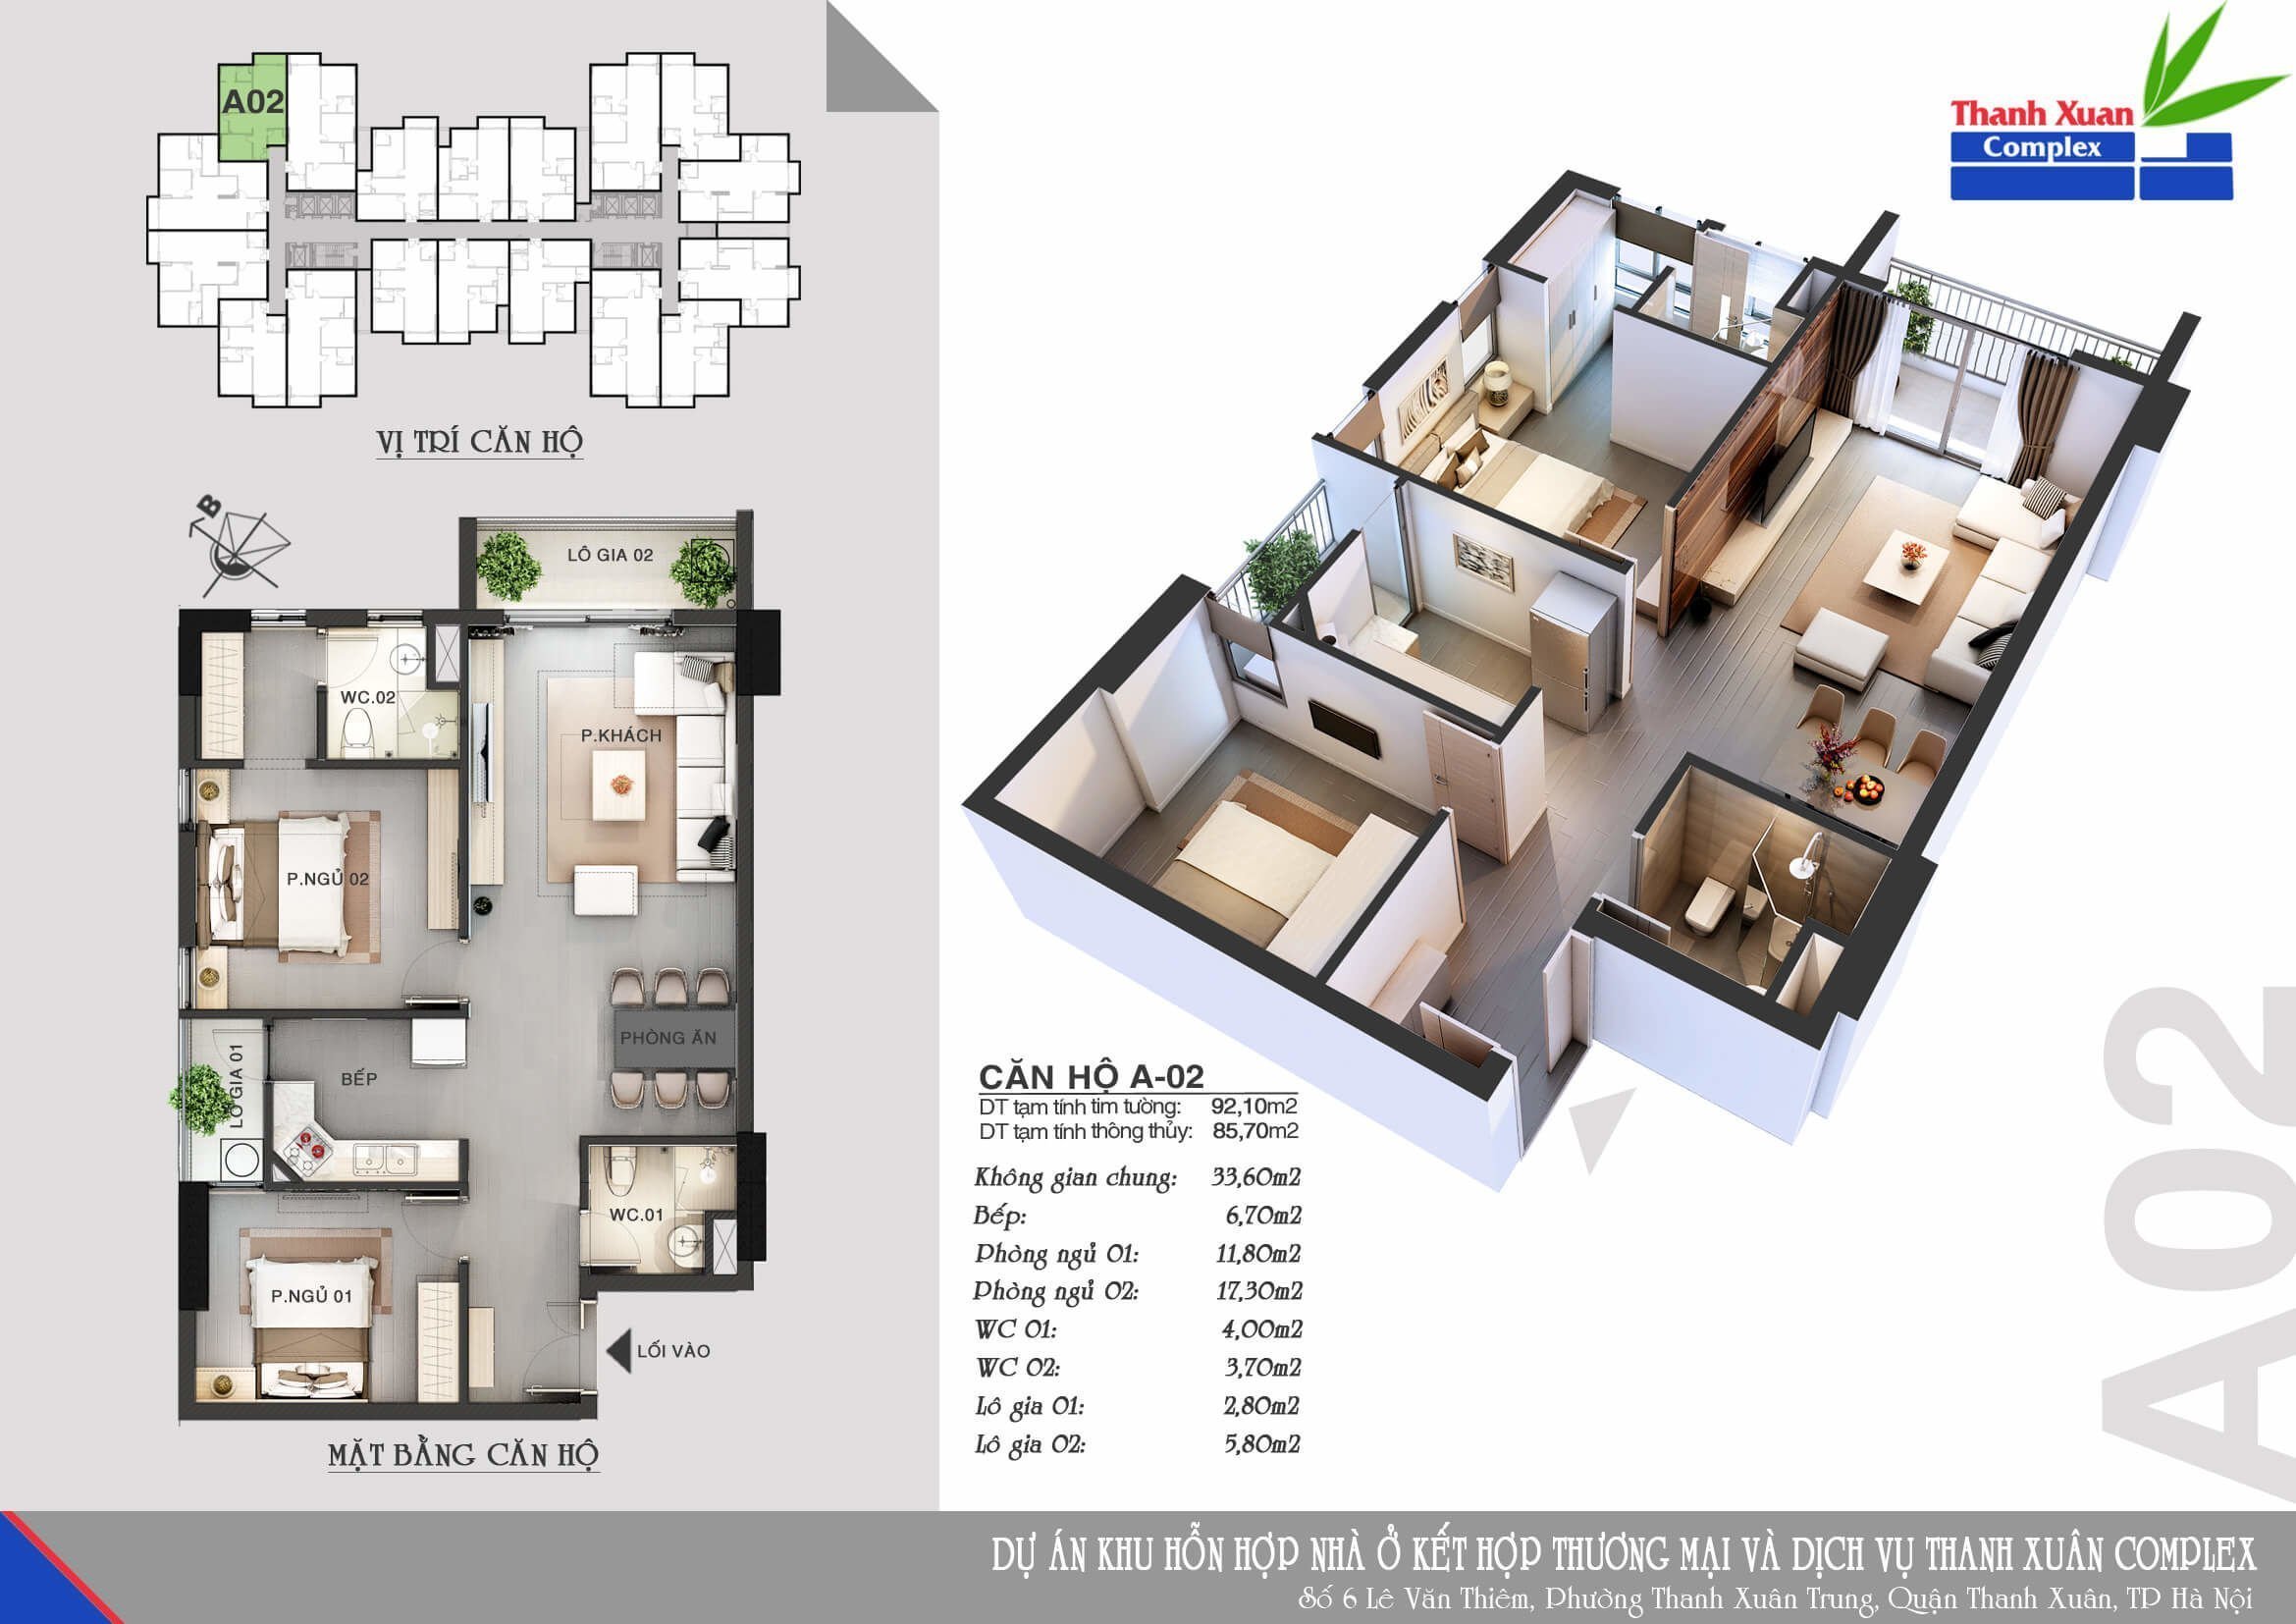 Thiết kế căn hộ điển hình dự án Thanh Xuân Complex